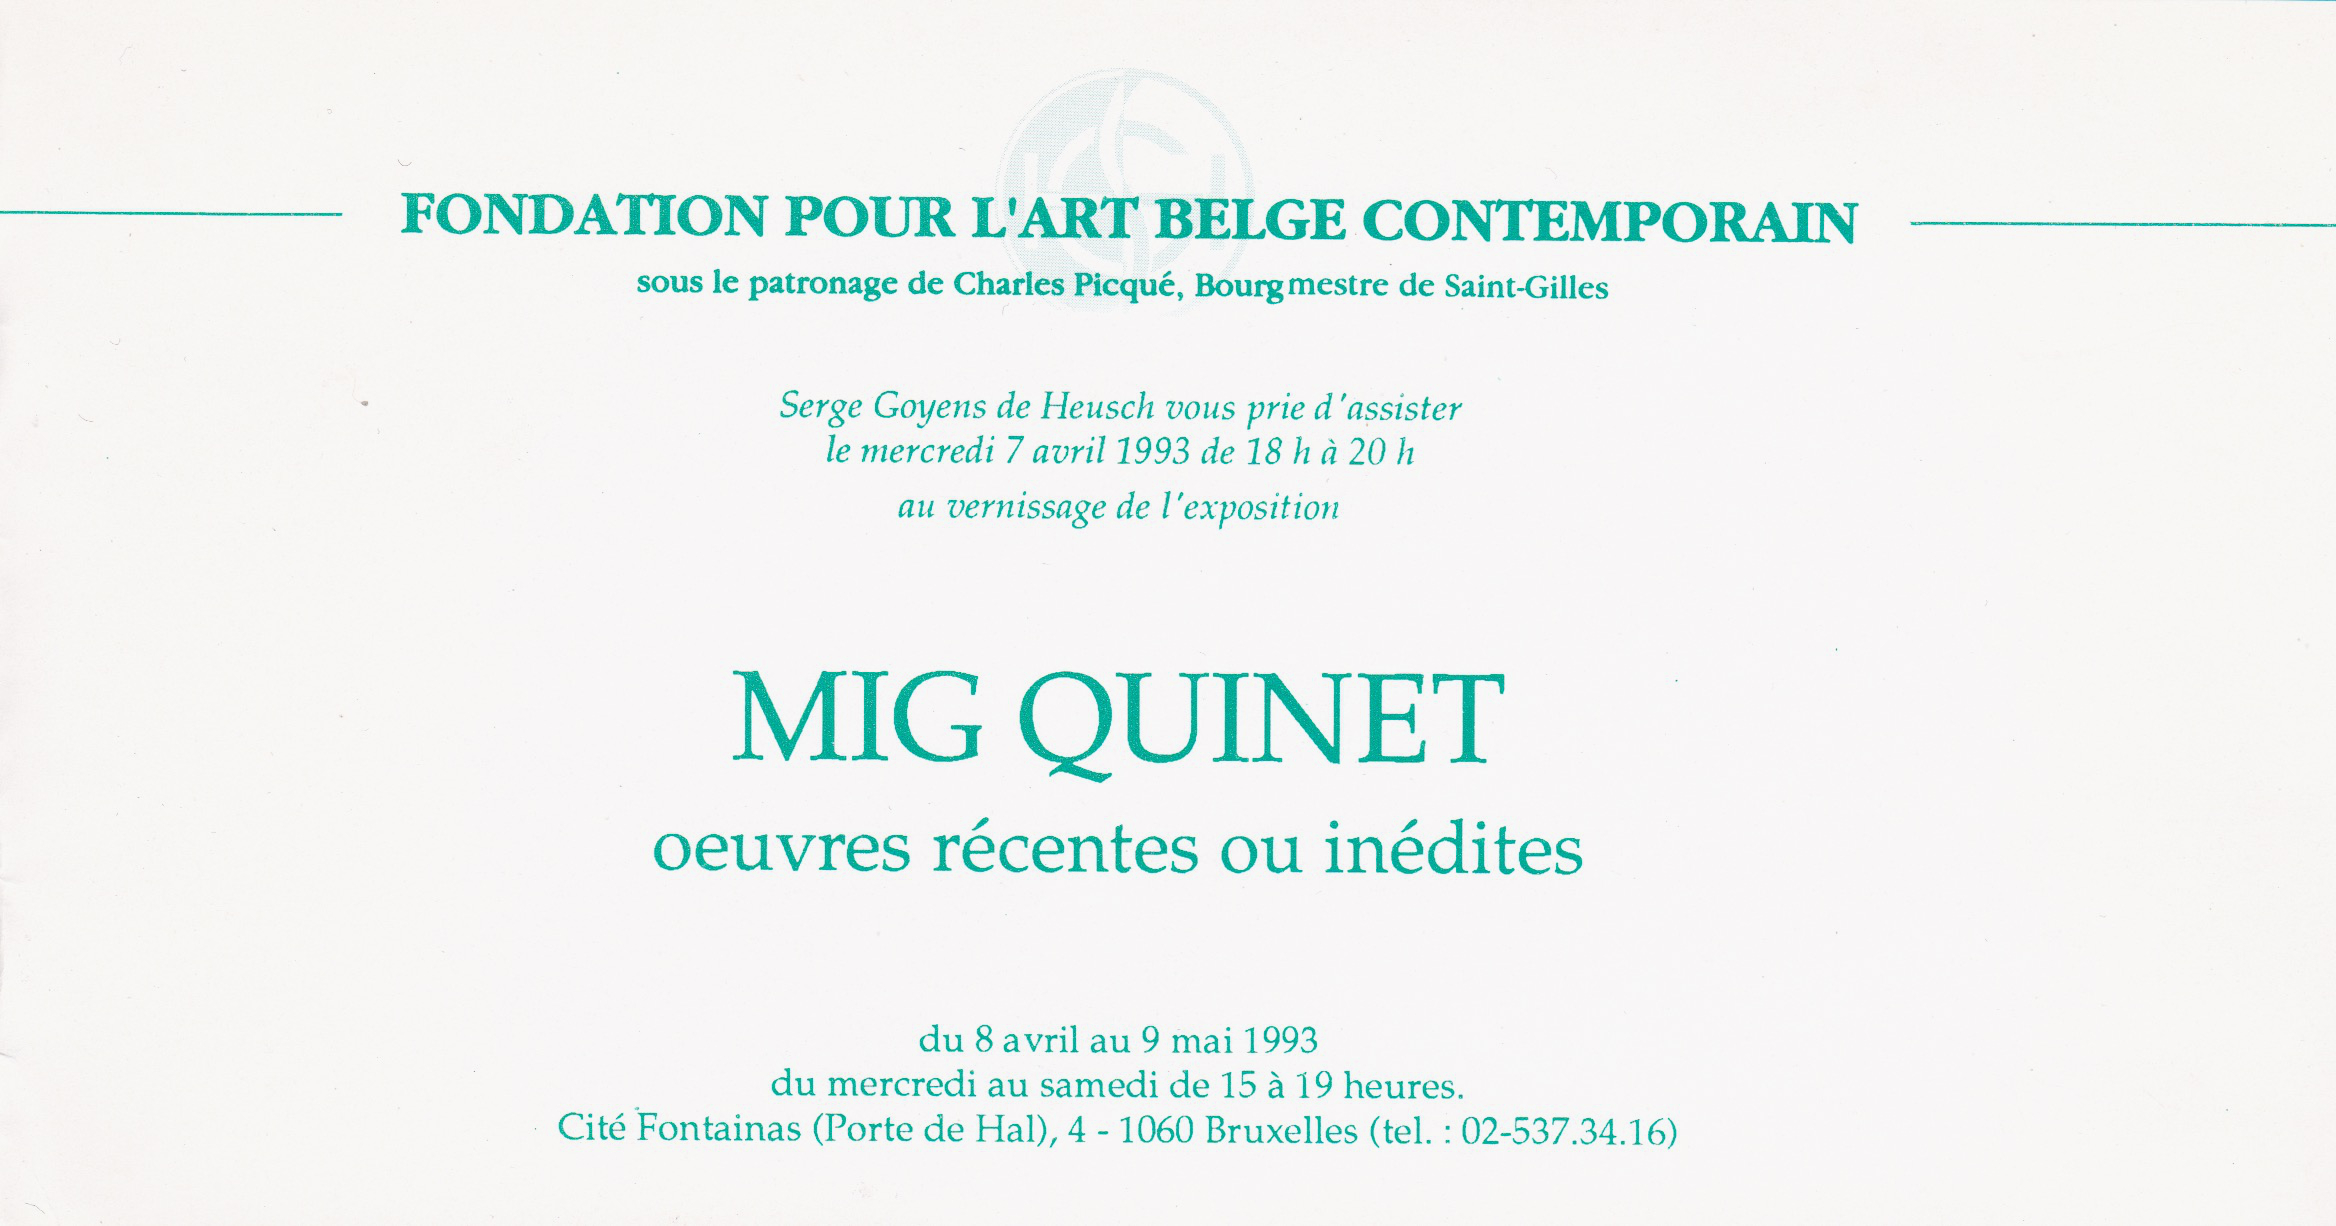 Mig Quinet, œuvres récentes ou inédites, fondation pour l’art belge contemporain, 1993